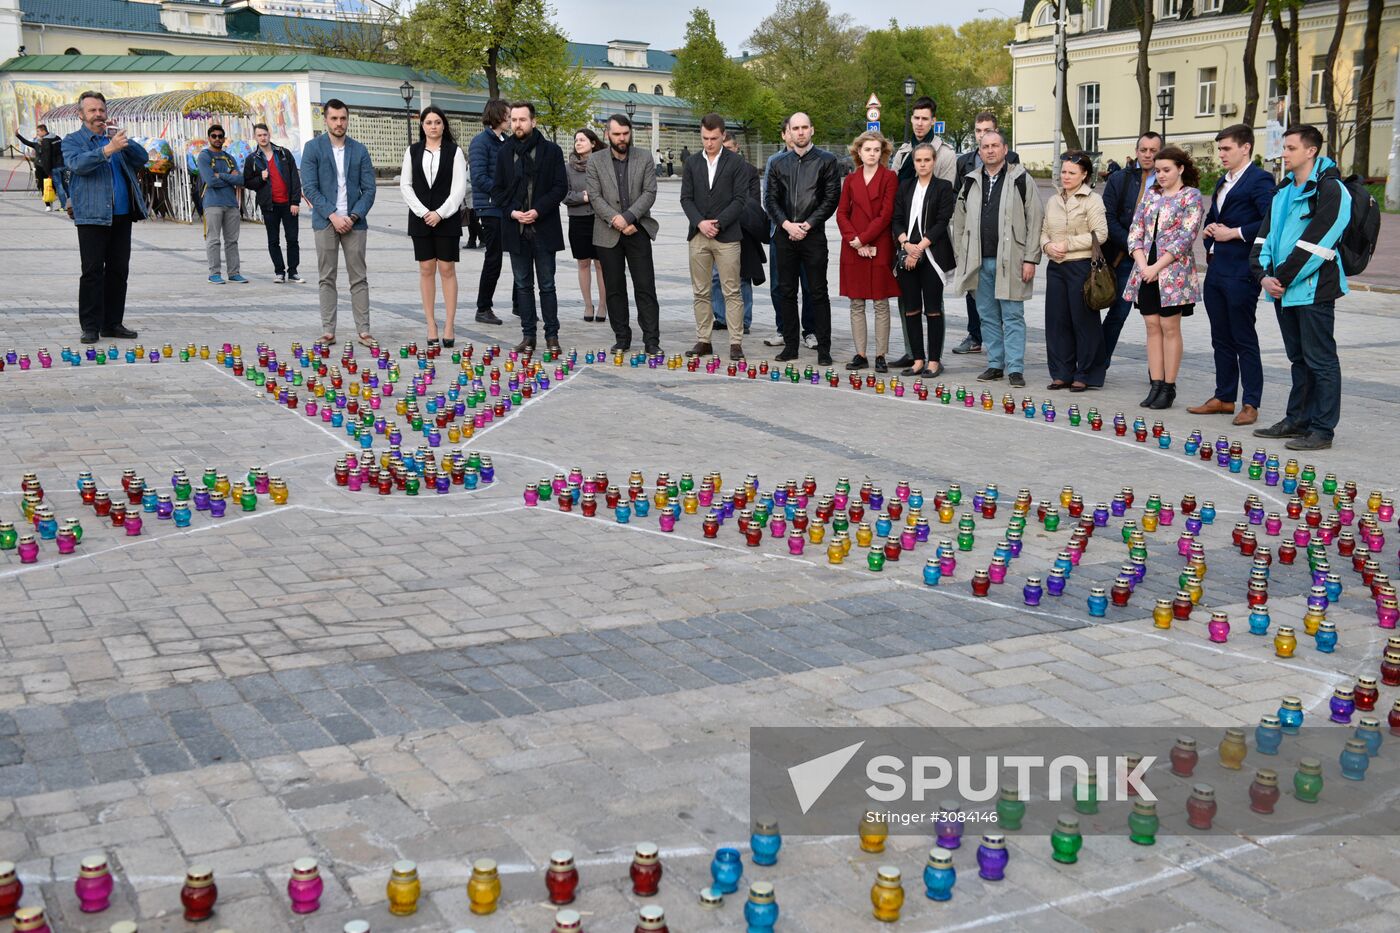 Chernobyl disaster memorial campaign held in Kiev